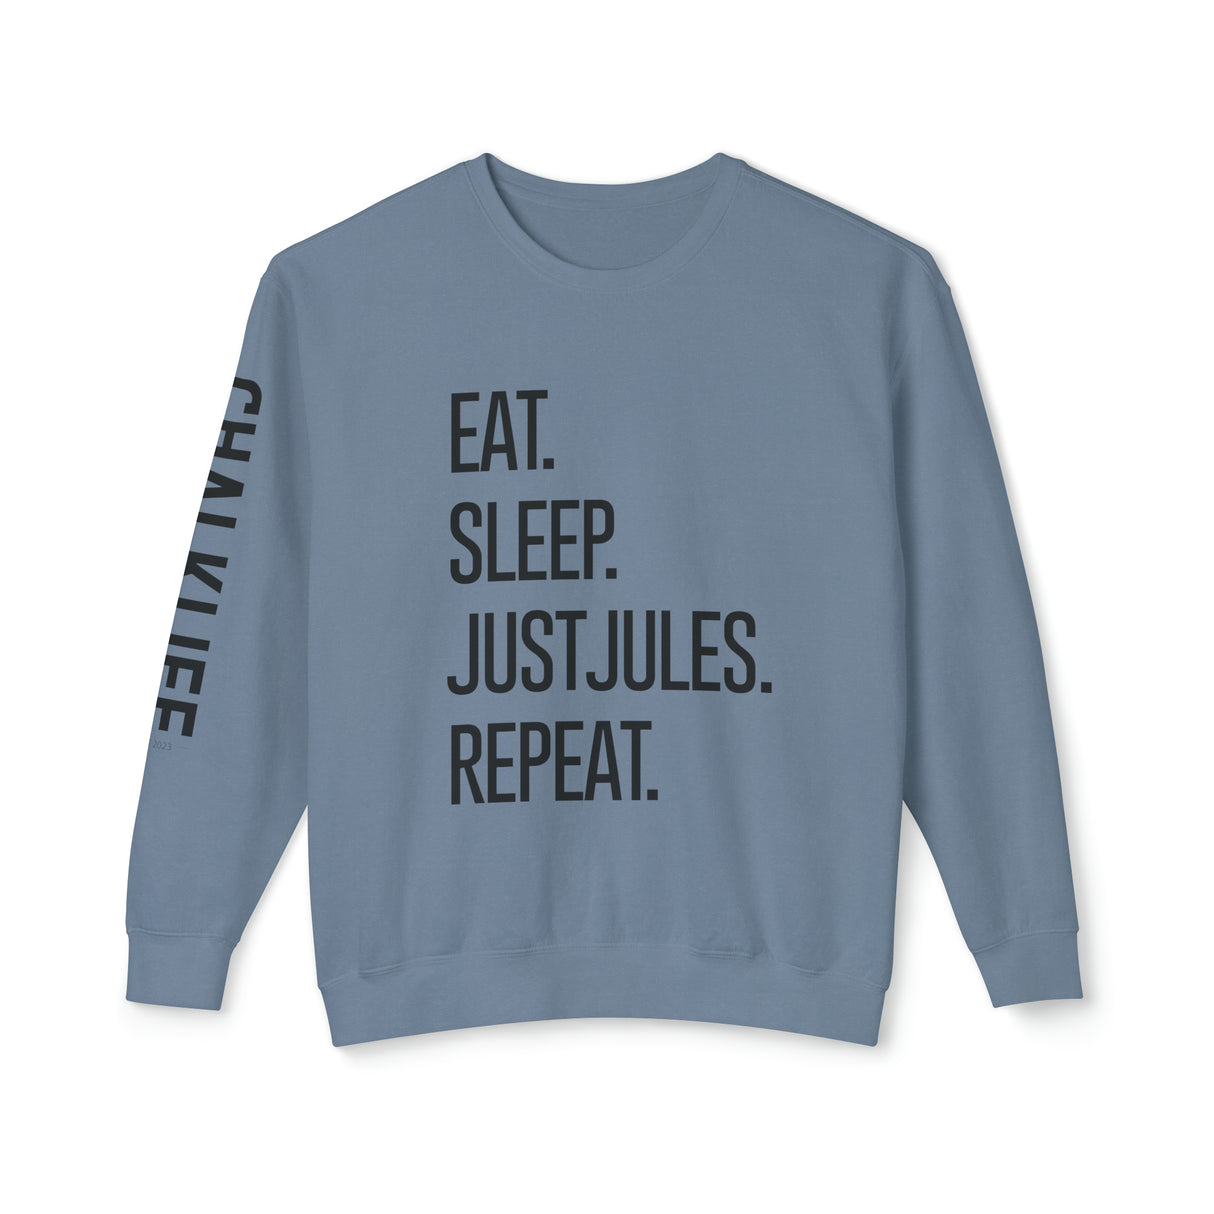 JustJules - Eat.Sleep.JustJules. Repeat. - Lightweight Crewneck Sweatshirt